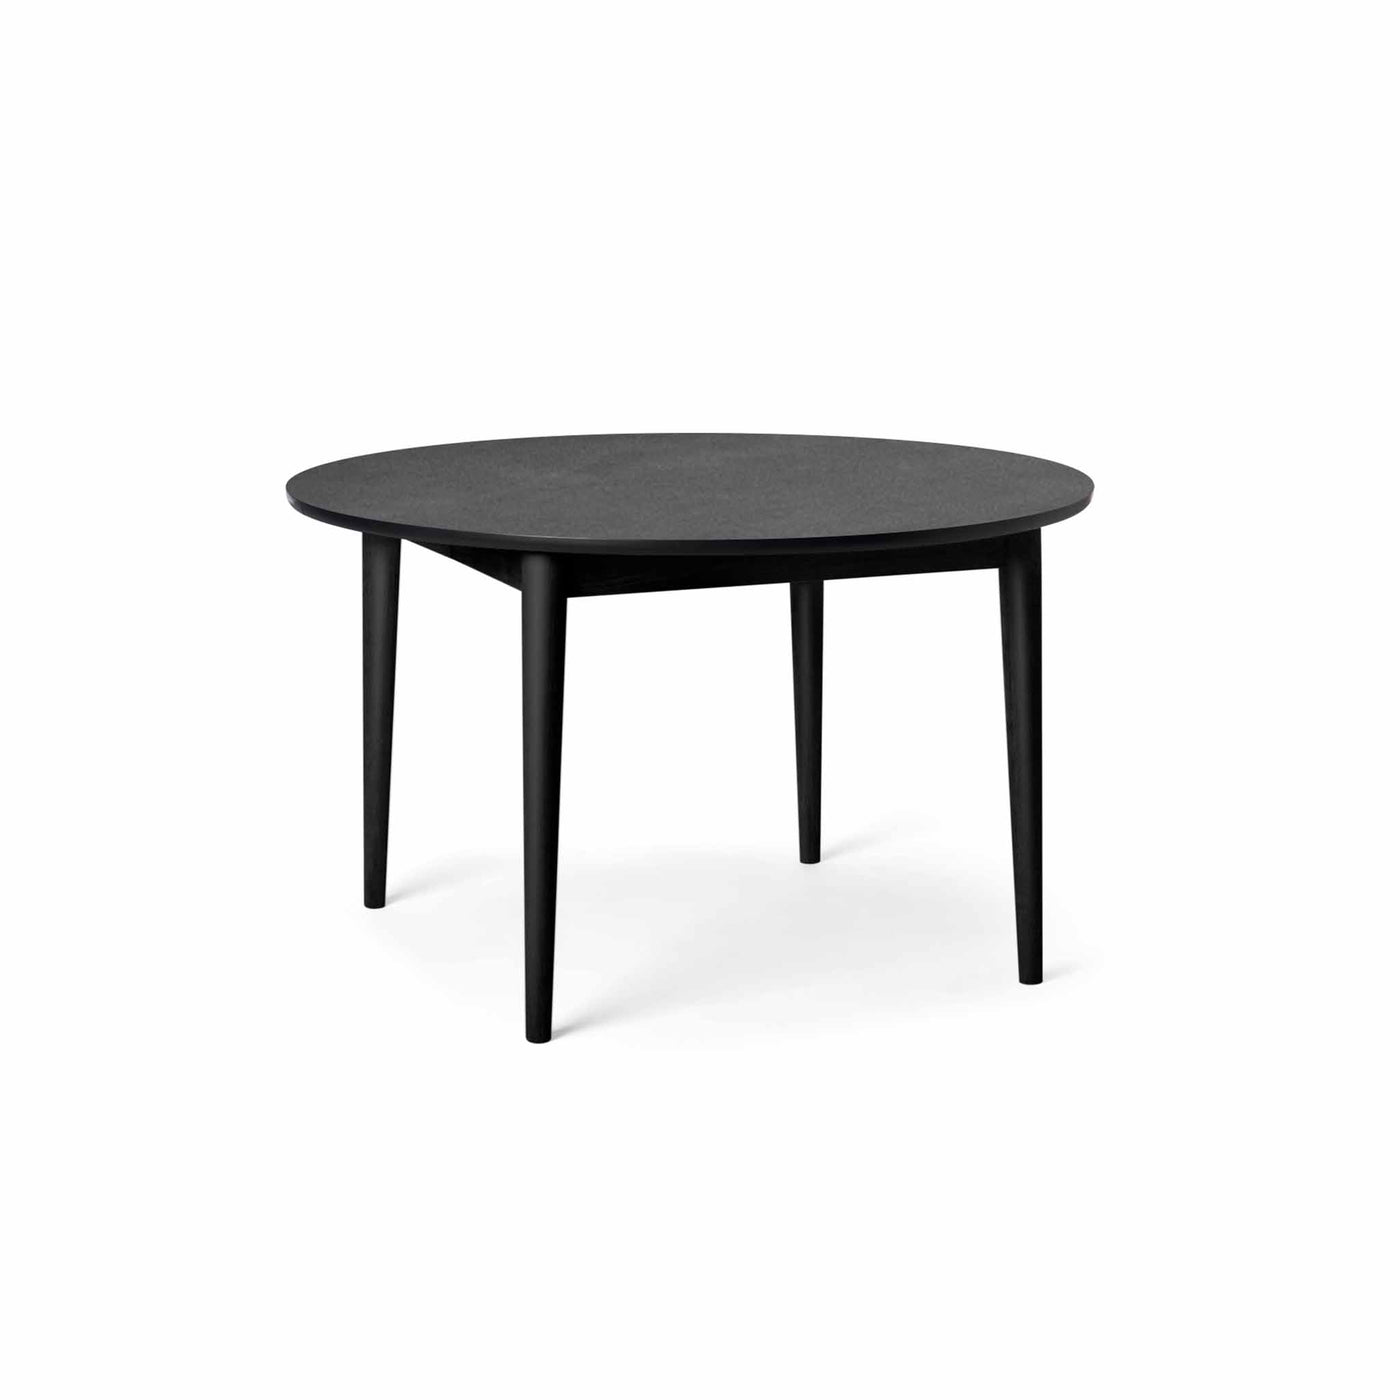 Svane Design Idyl spisebord Ø125 cm med bordplade i stone look laminat og ben i sortbejdset bøg.